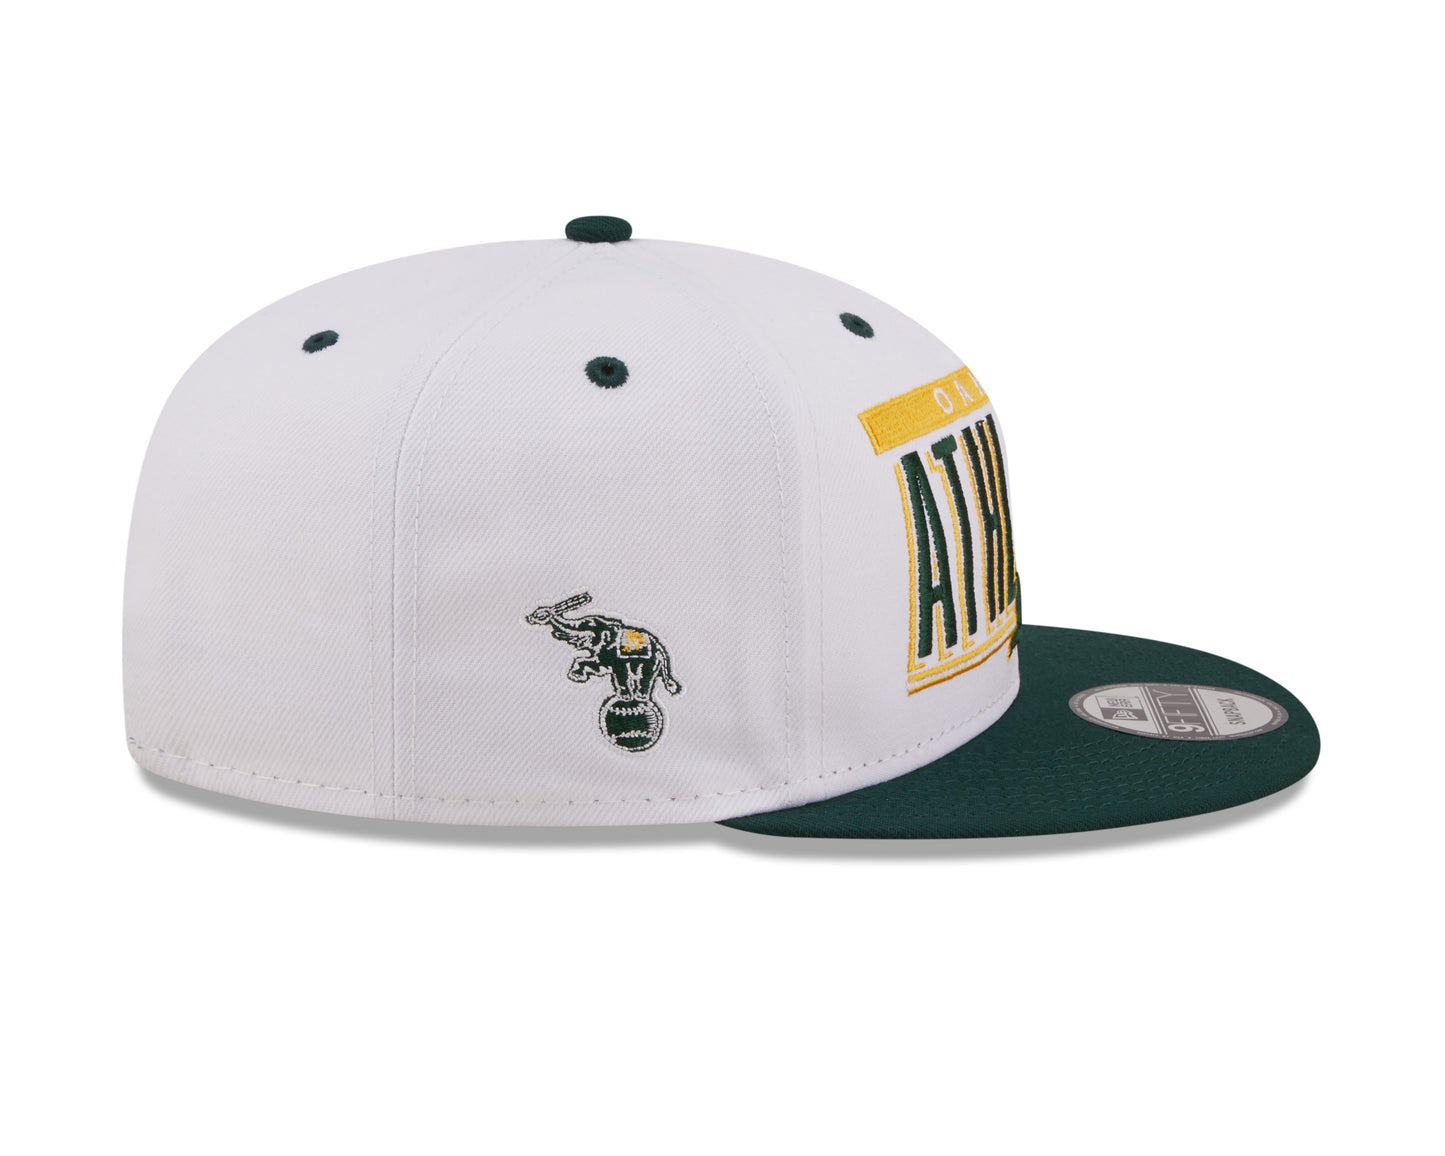 Oakland Athletics New Era Retro Title 9FIFTY Snapback Hat - White/